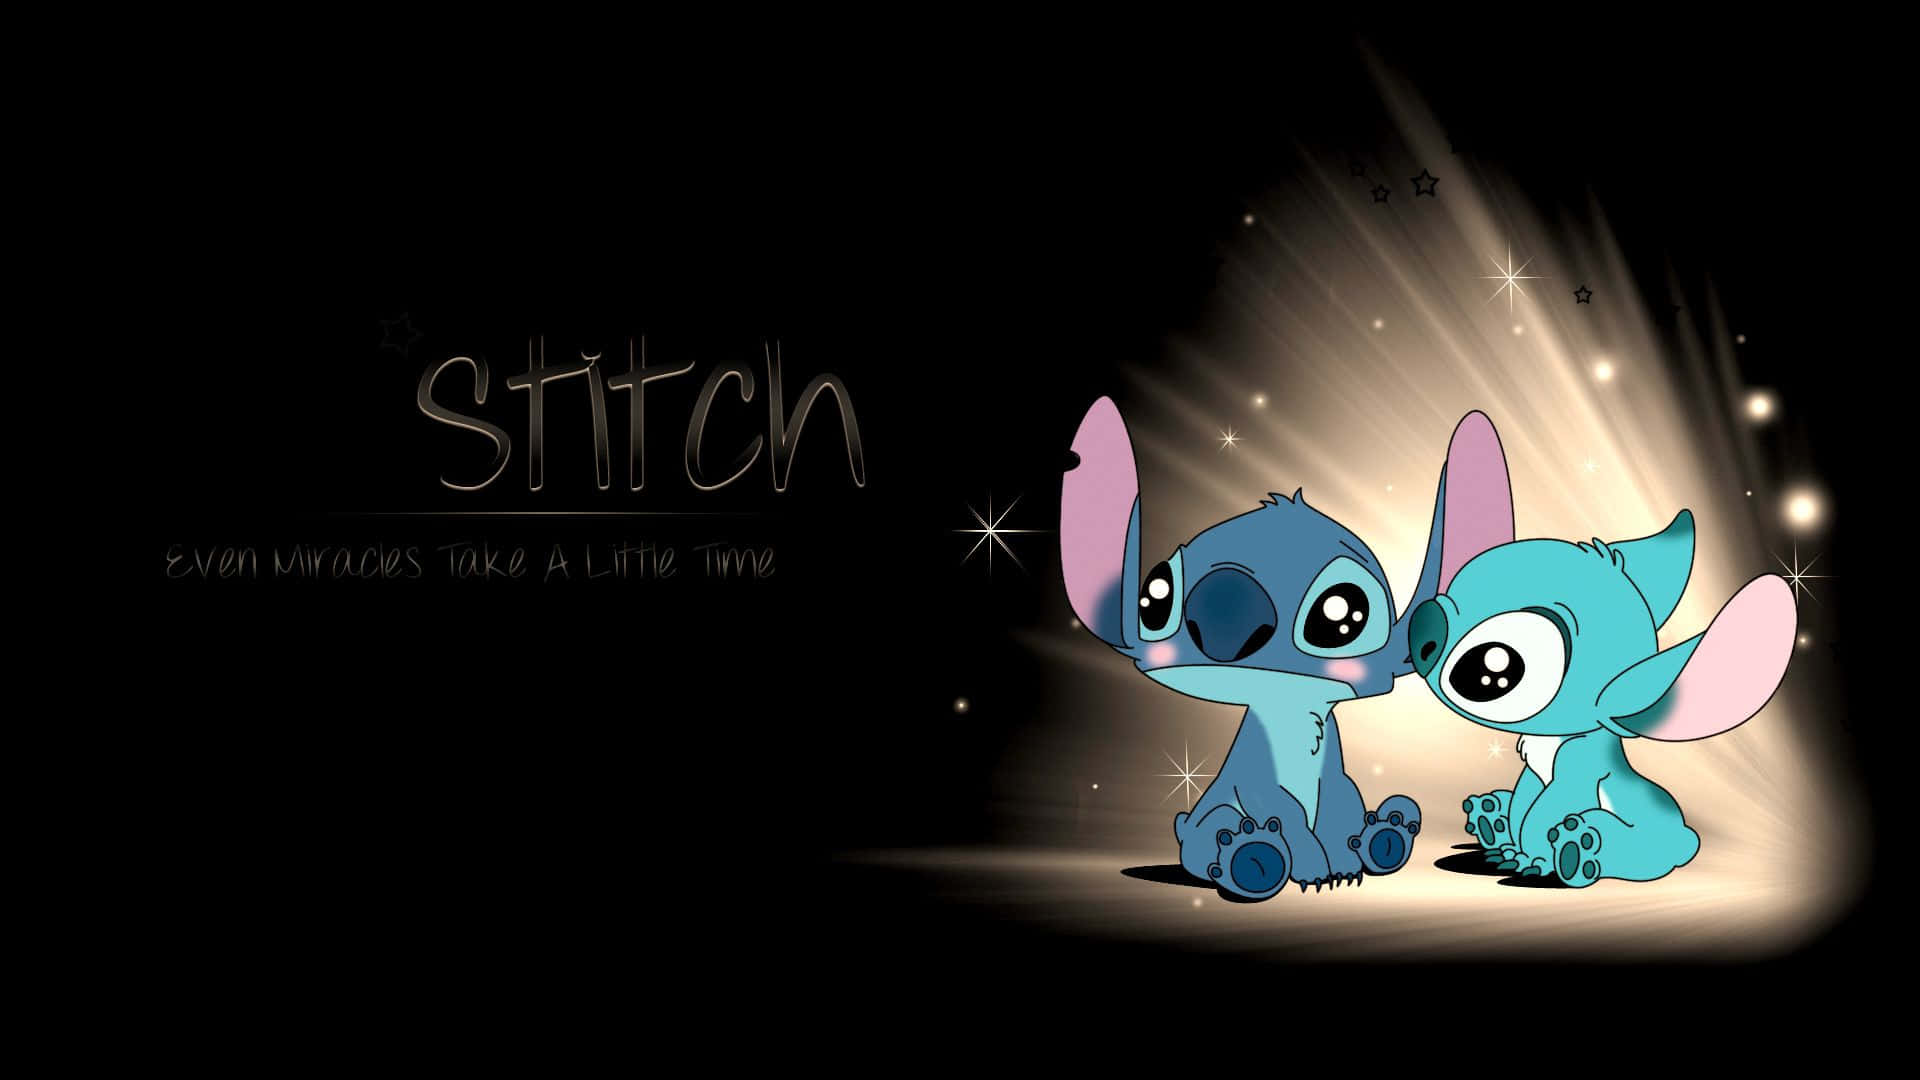 Bemvindo A Um Mundo De Diversão Encantadora Com O Stitch